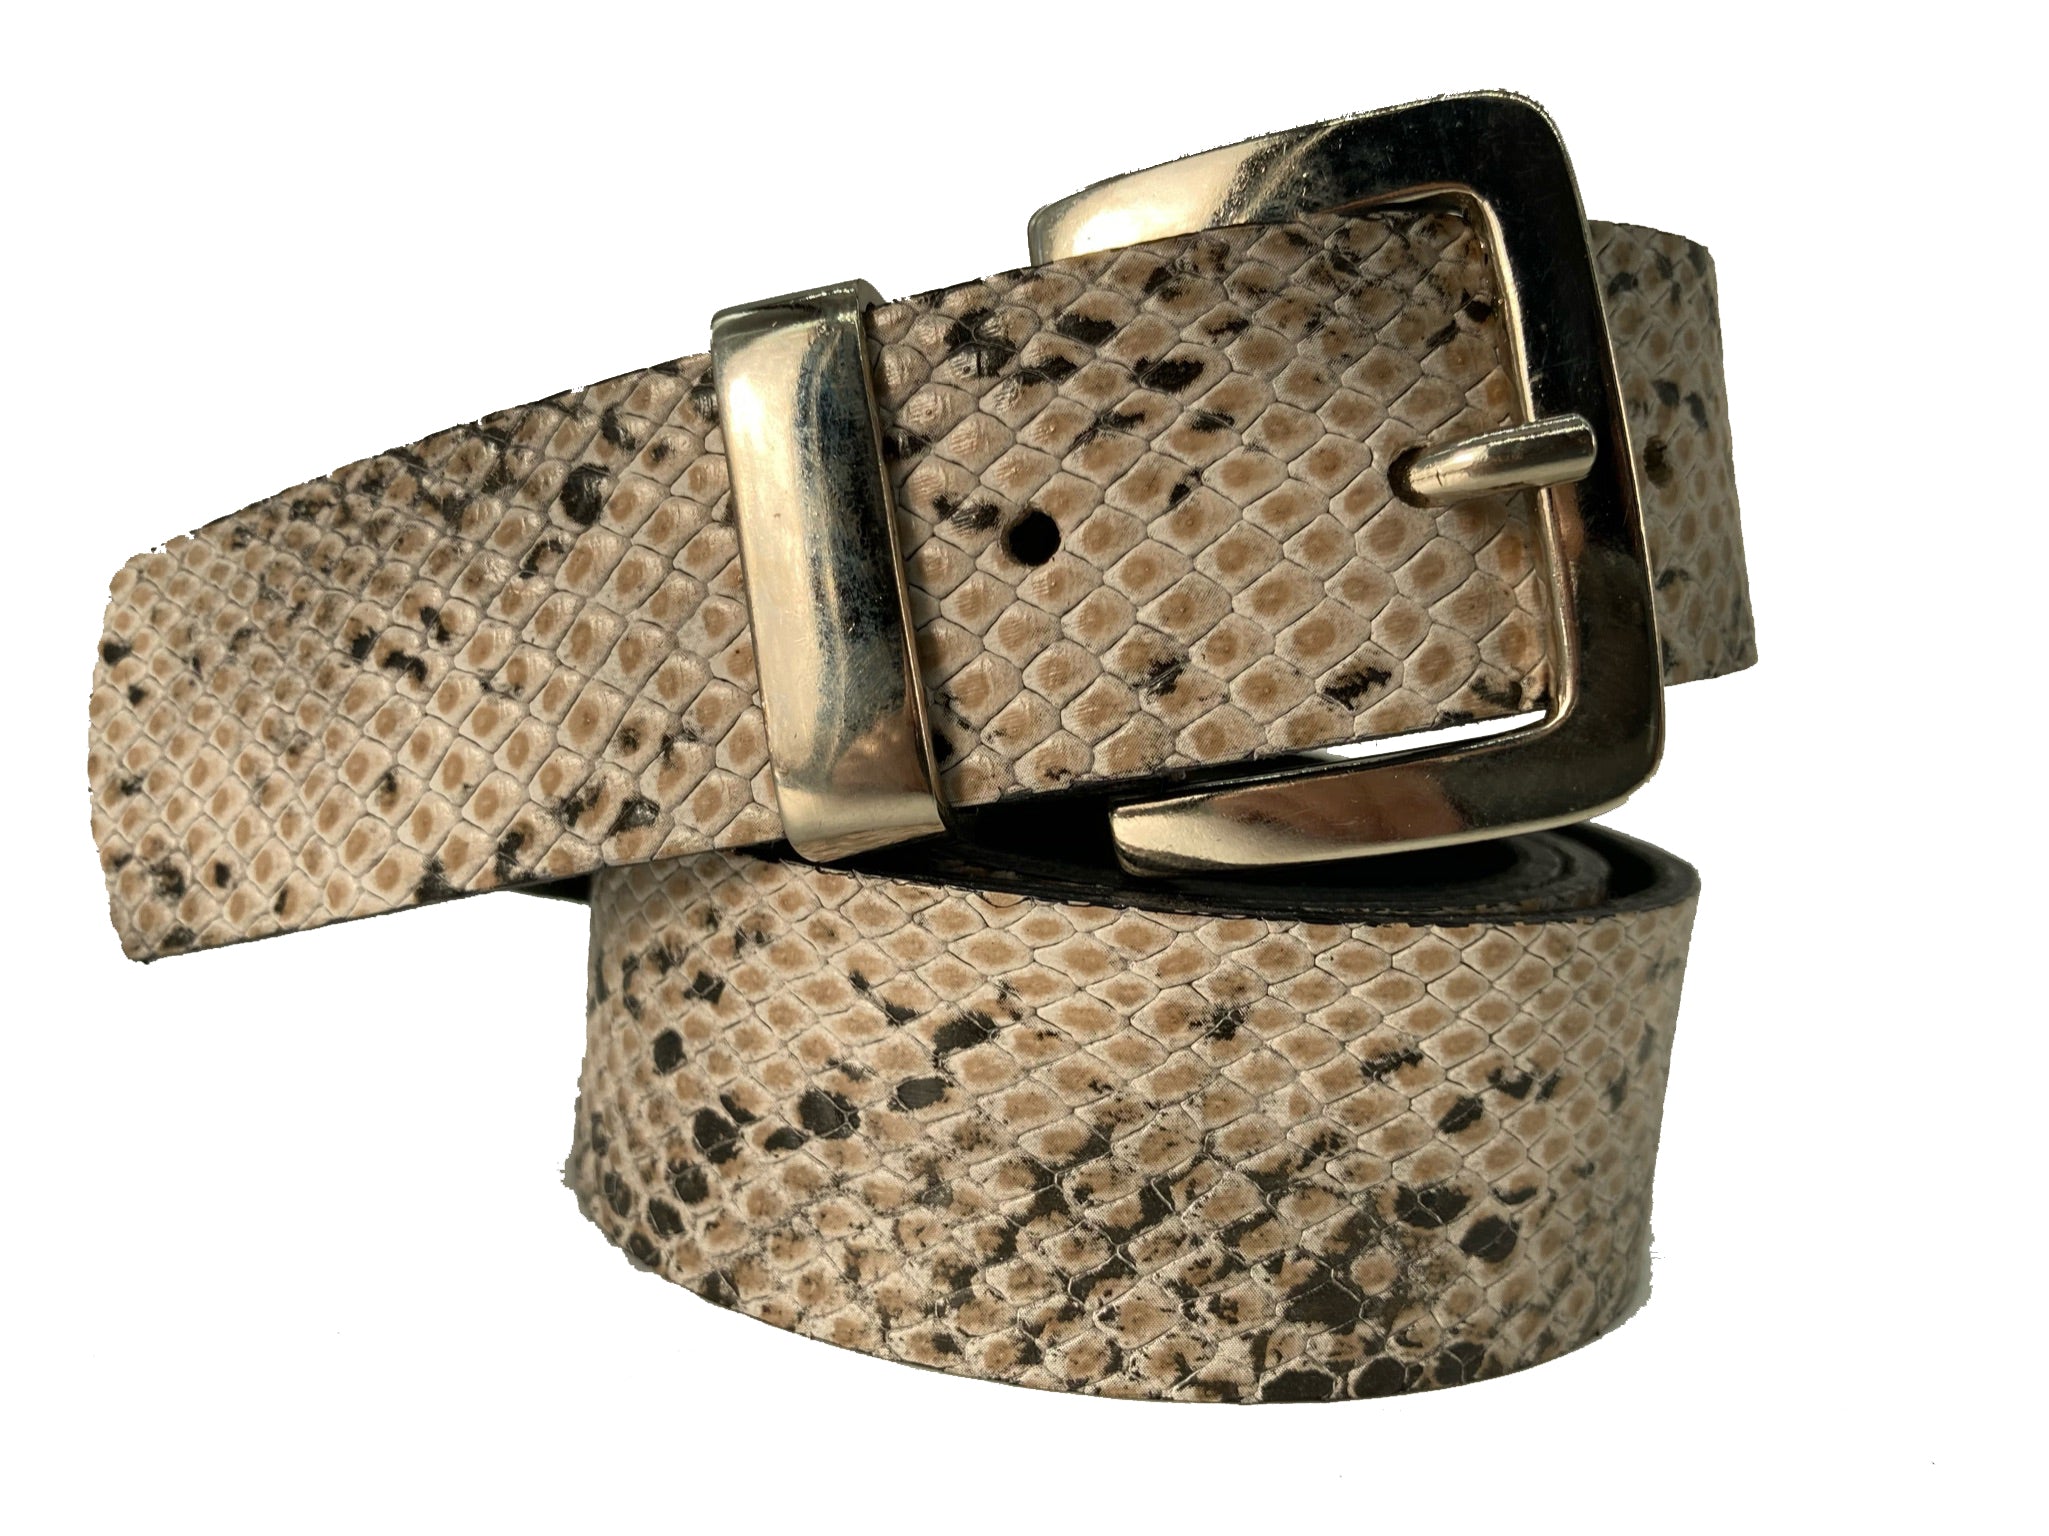 Handcrafted Leather Belt - "Nolita Snack"